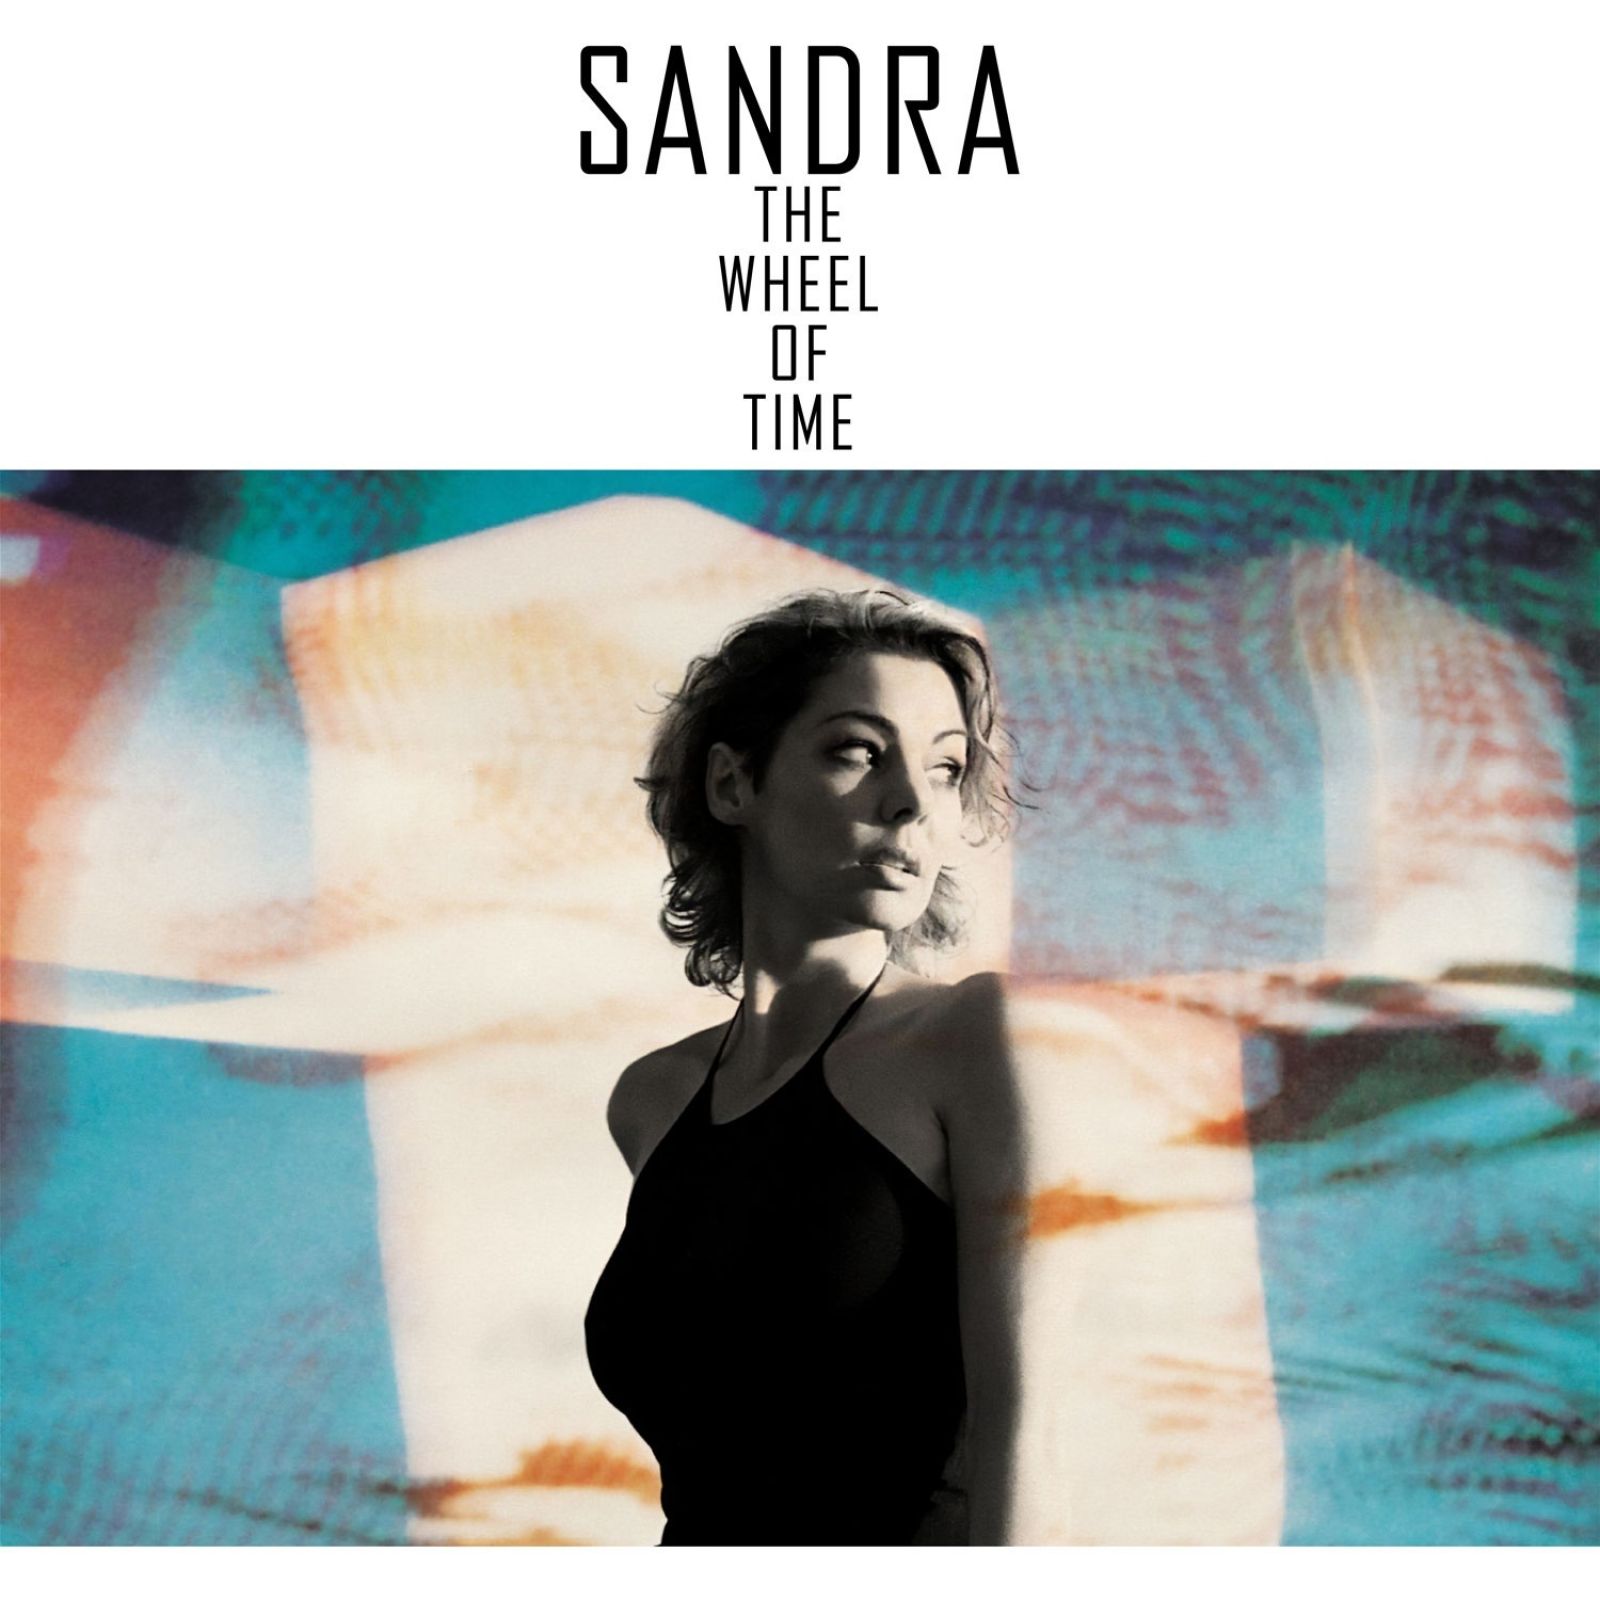 Sandra The Wheel Of Time Limited Edition,blue Vinyl (LP), купить в Москве, цены в интернет-магазинах на Мегамаркет